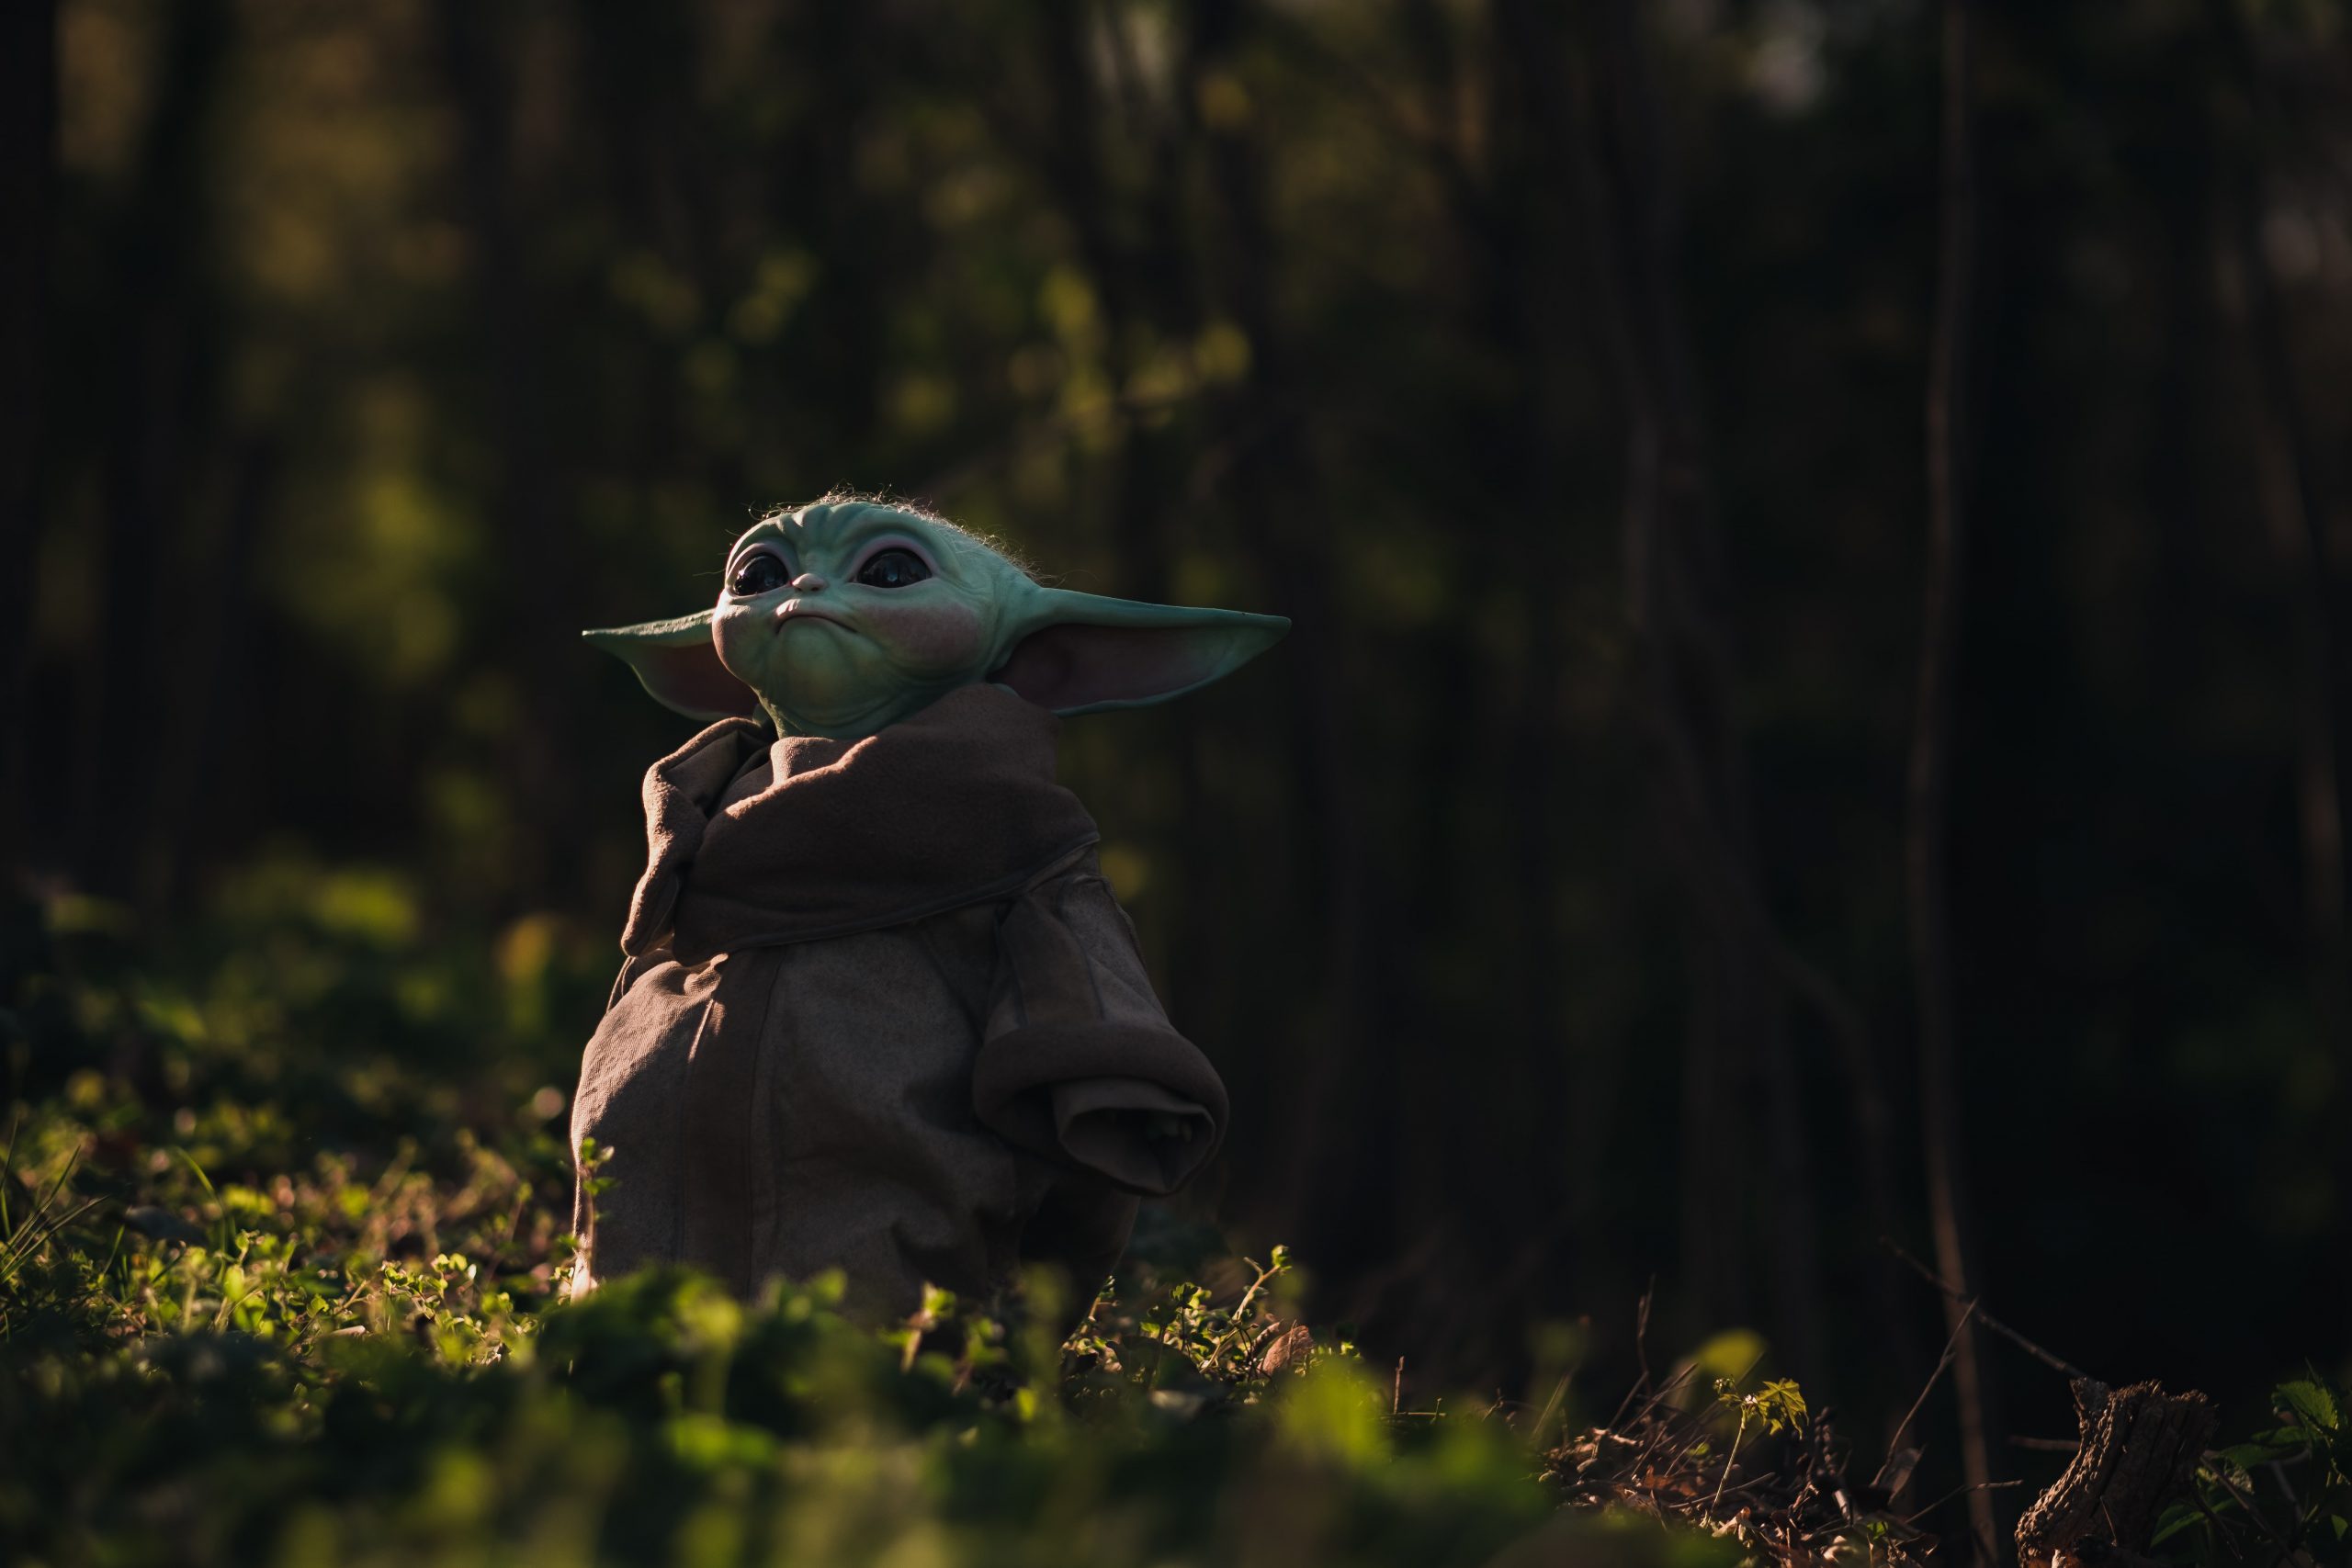 Baby Yoda in grass